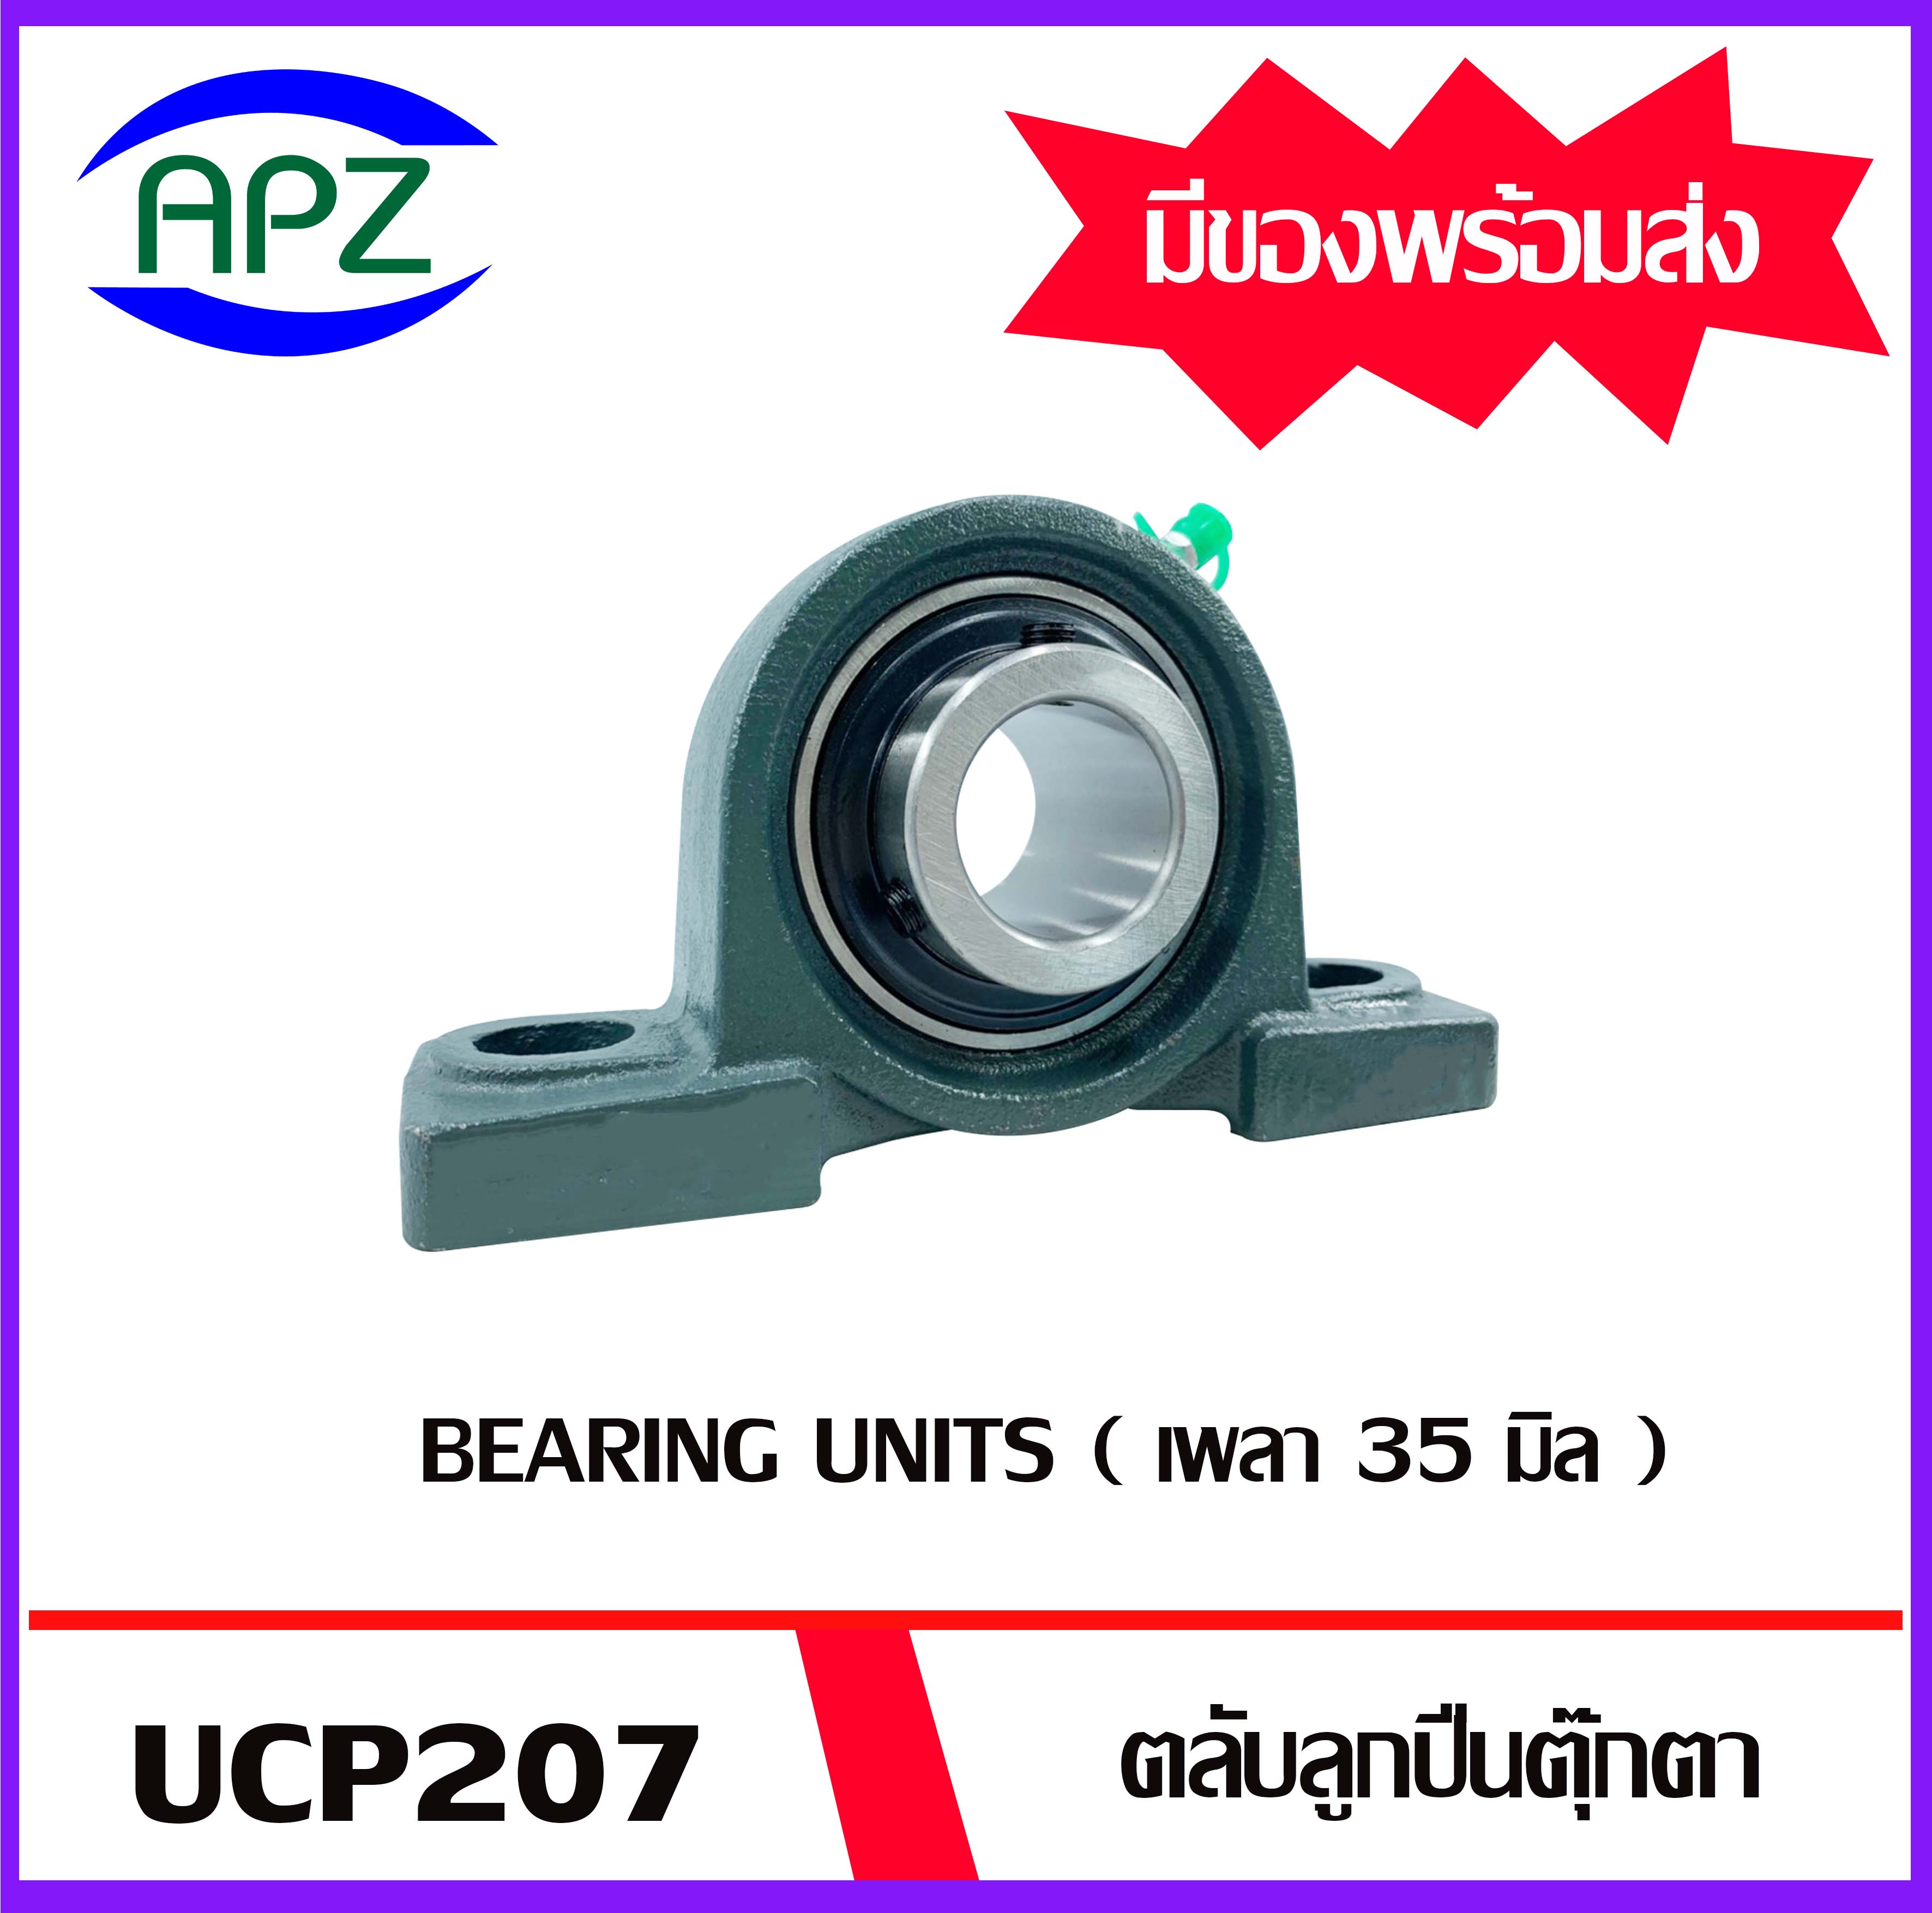 UCP207 Bearing Units ตลับลูกปืนตุ๊กตา UCP 207 ( เพลา 35 มม. ) จำนวน 1 ตลับ